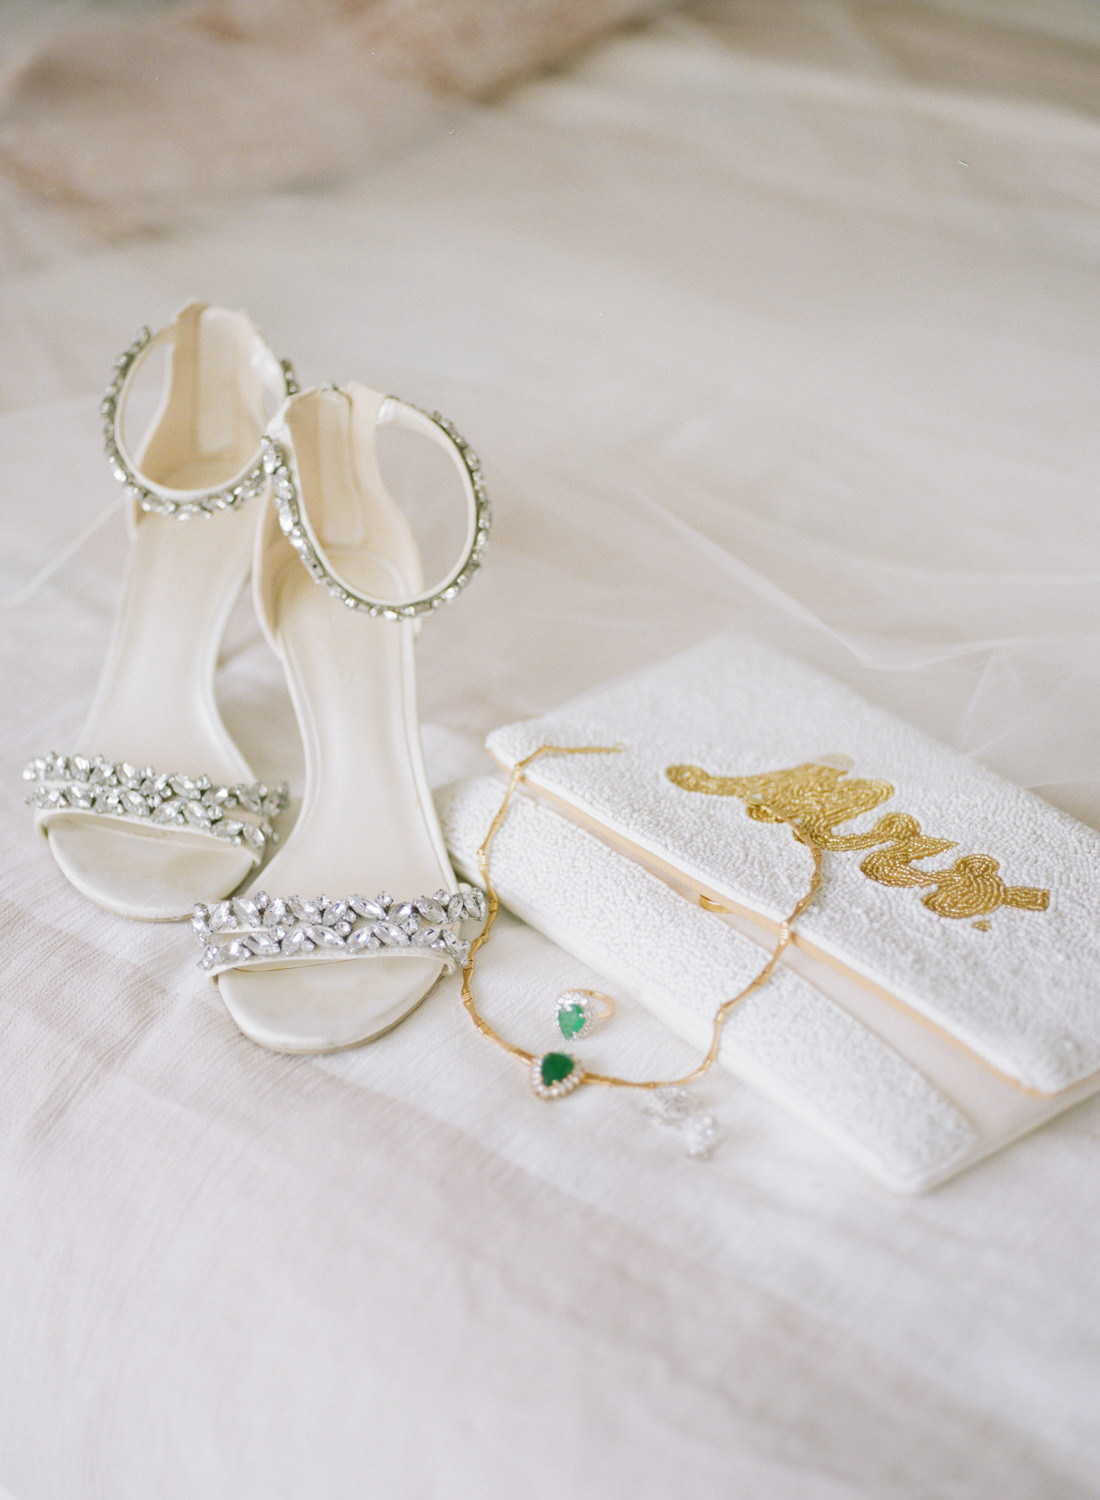 Jeweled bridal shoe and white Mrs.. bridal purse; St. Louis wedding photographer